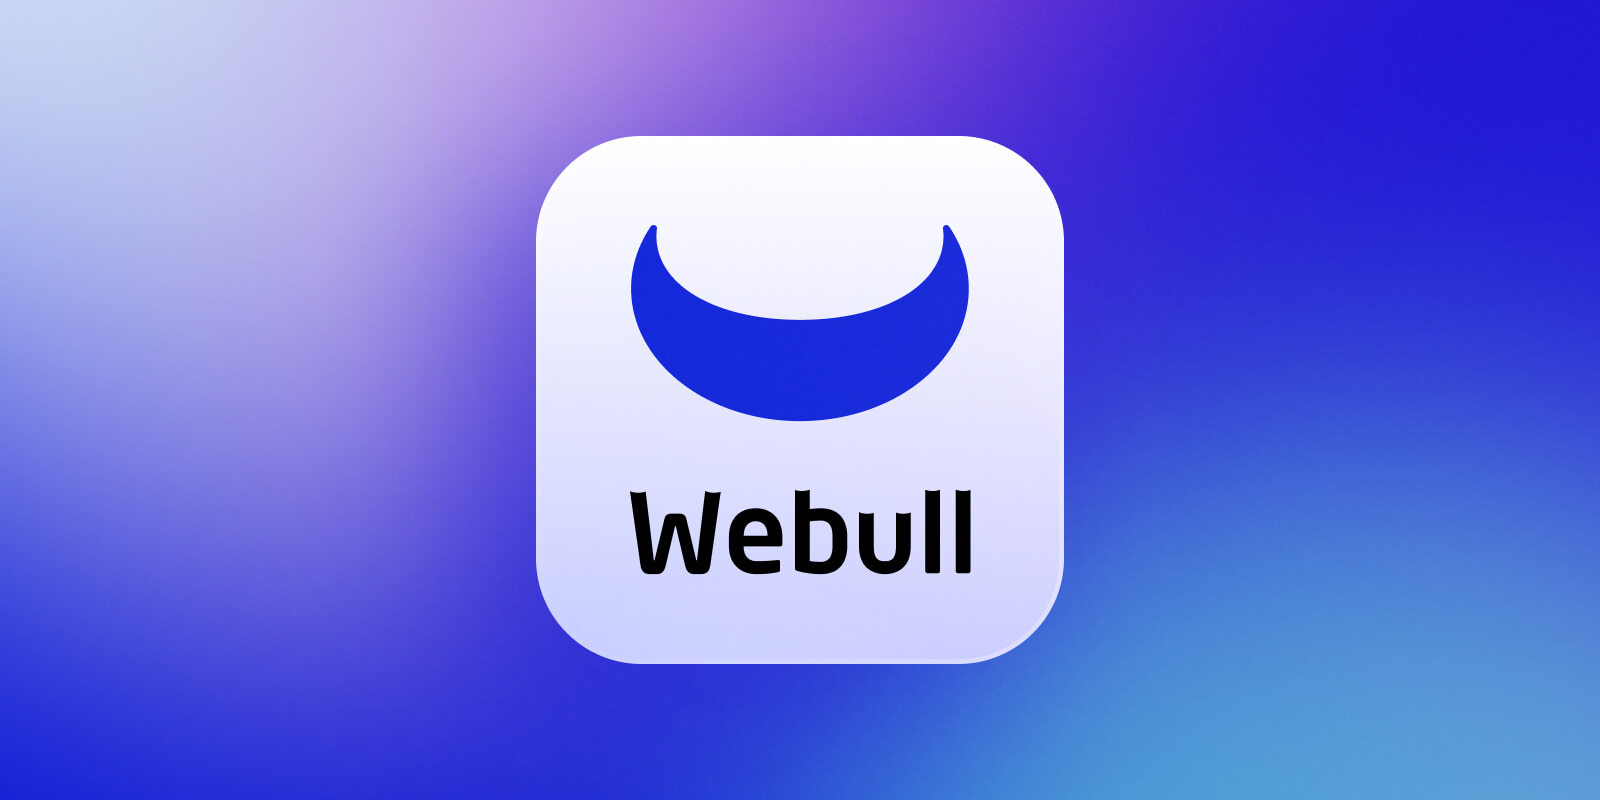 أعلنت منصة التداول عبر الإنترنت Webull اليوم عن إطلاق Webull Lite